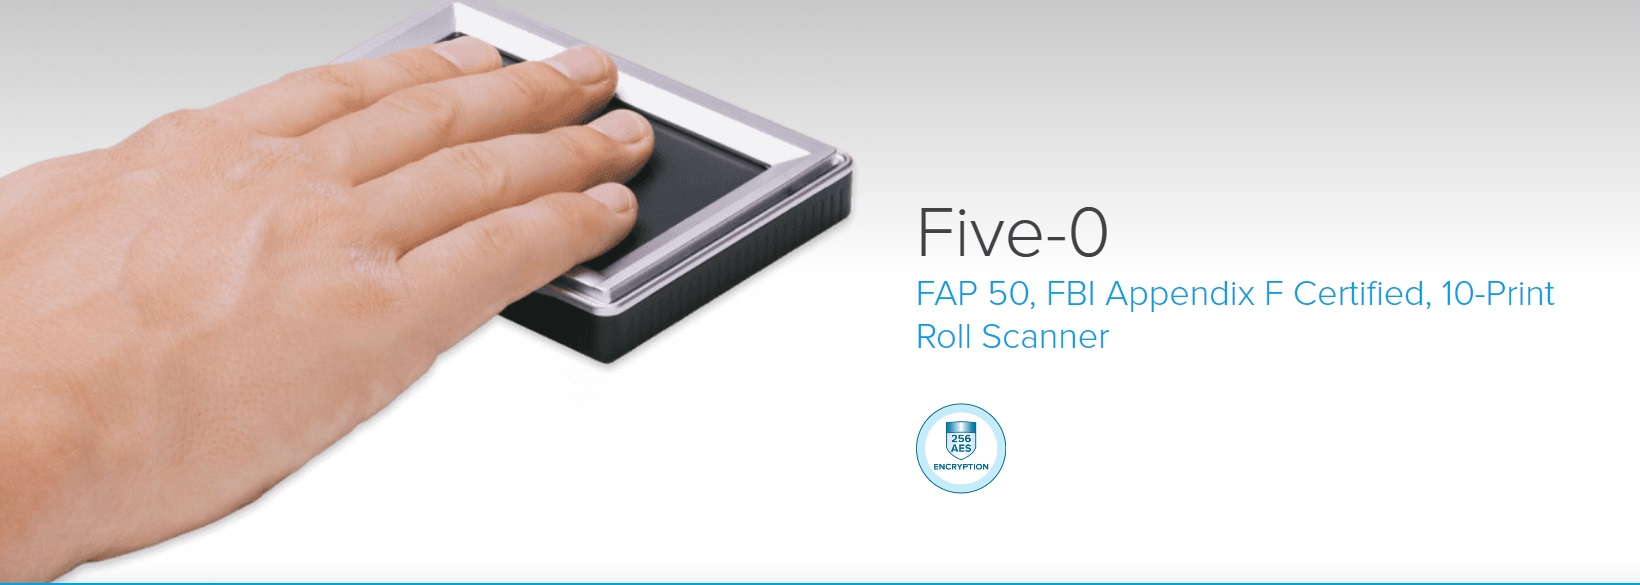 Five-0 fingerprint tablet